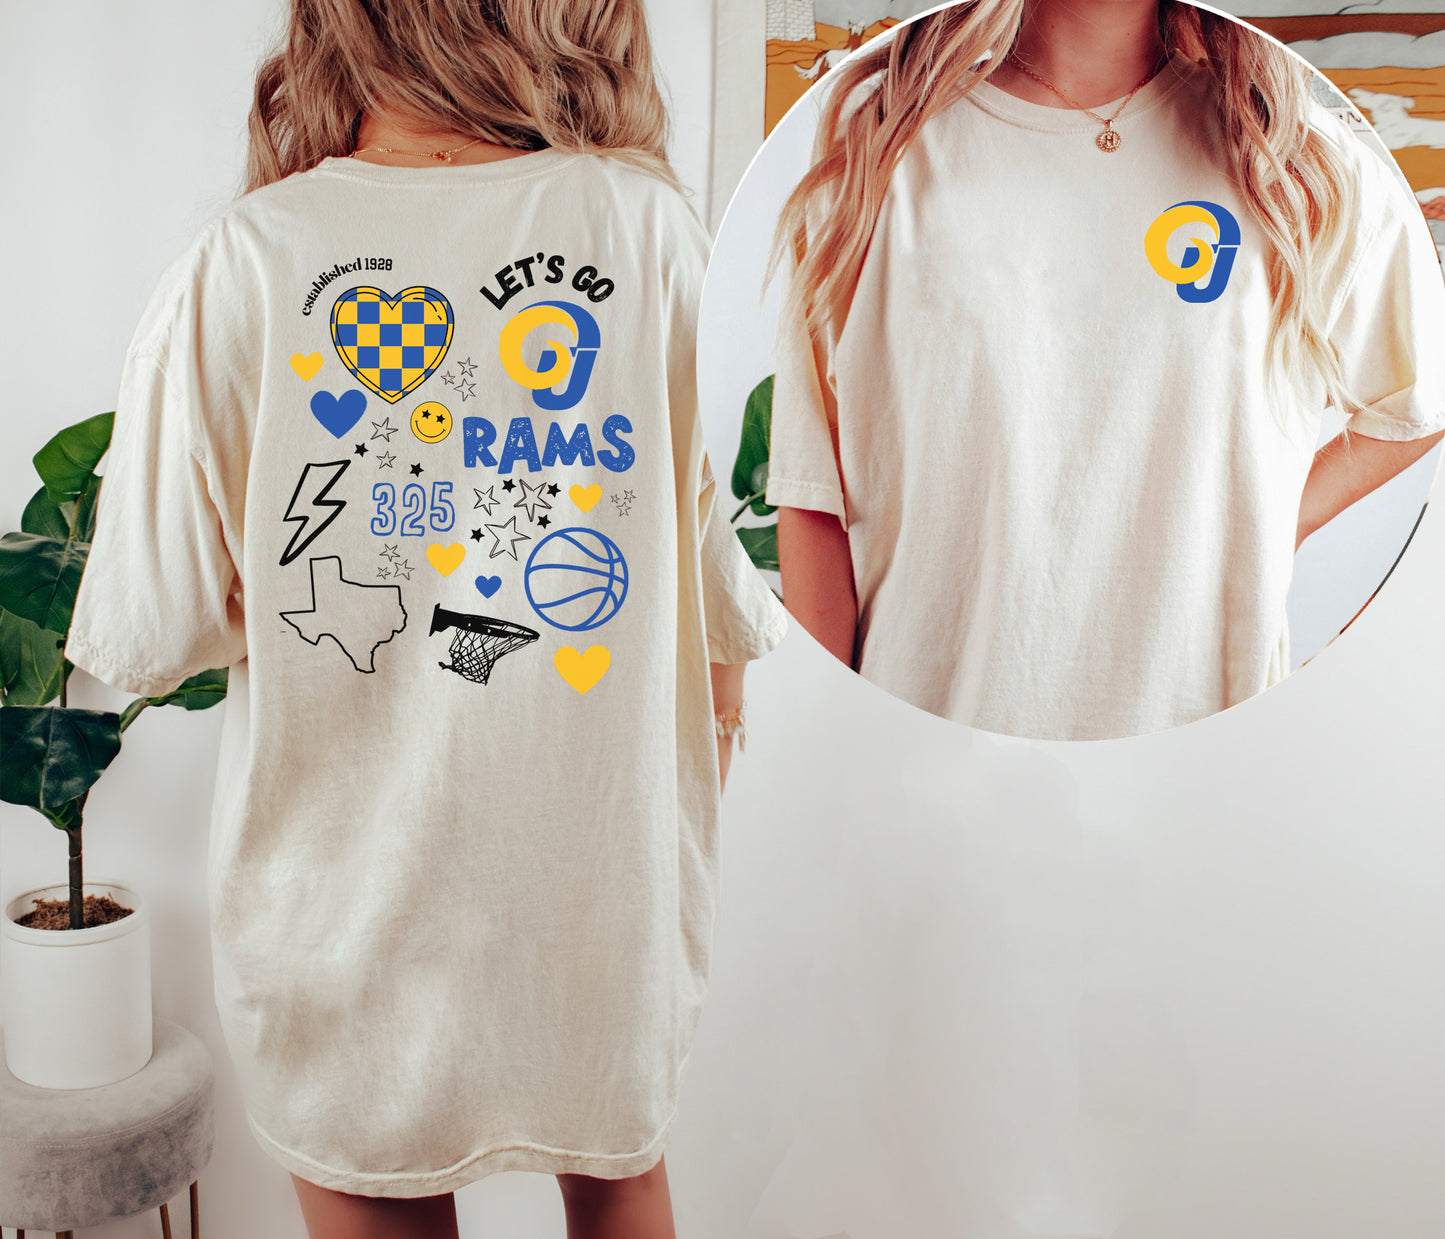 Rams Basketball Game Day Shirt